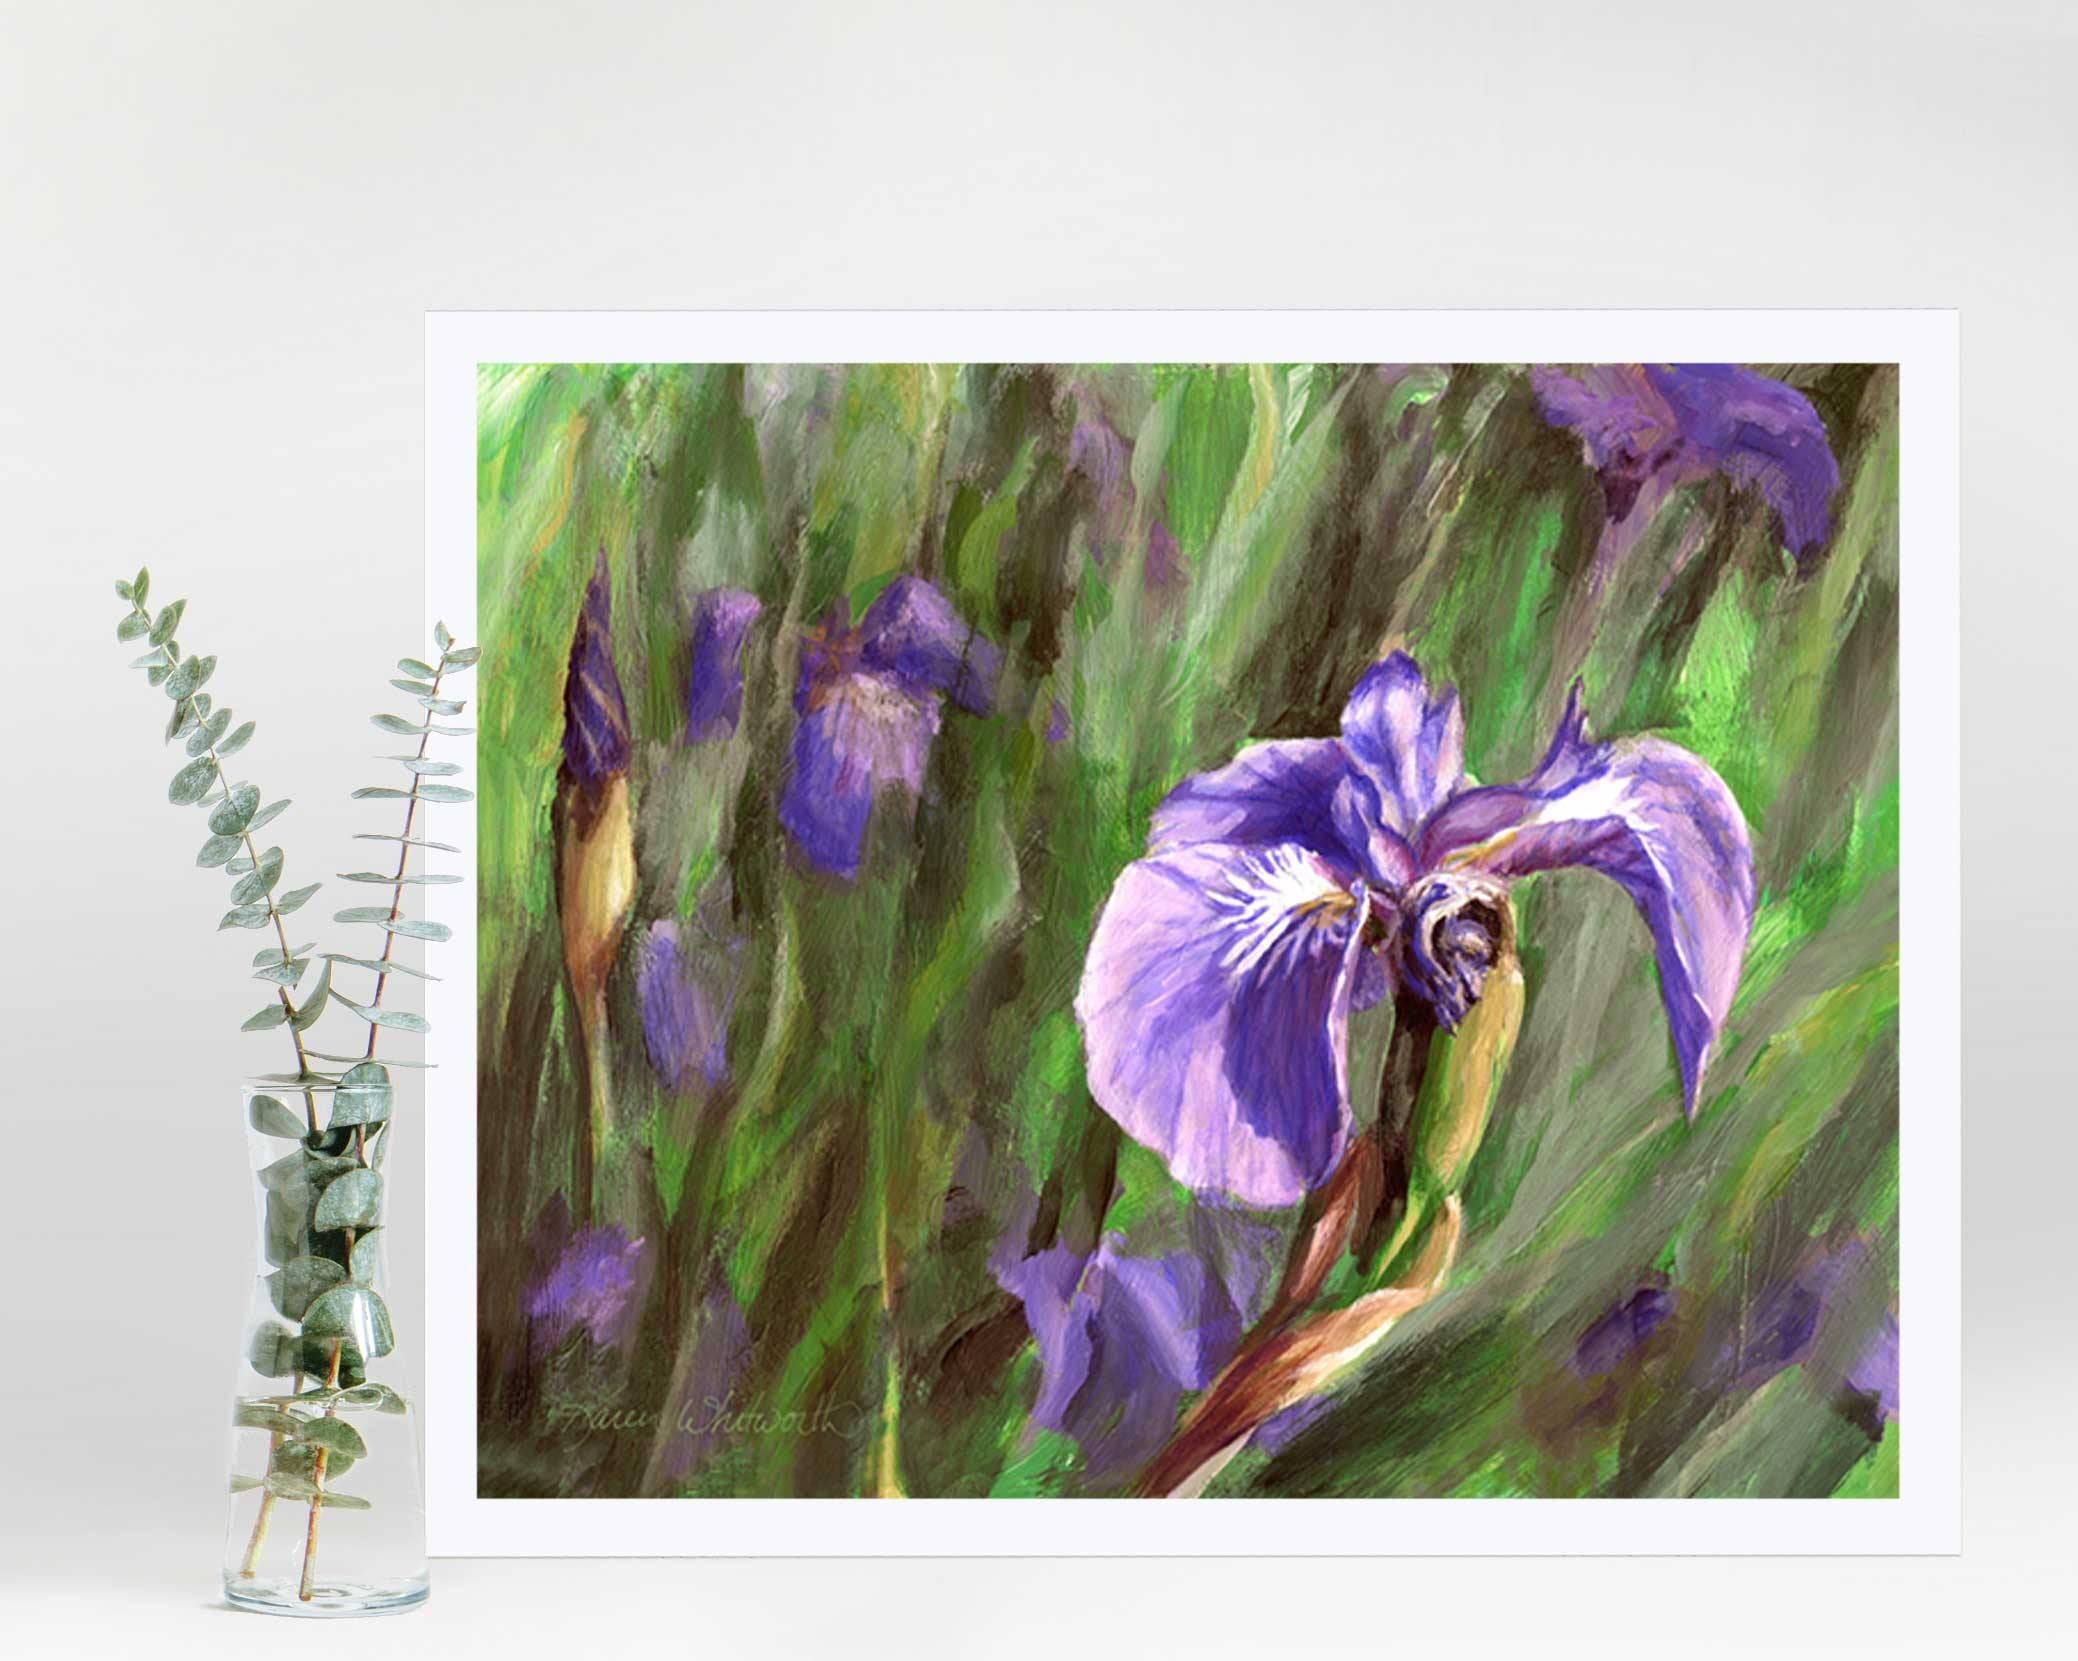 Paper wall art print of Alaskan wild iris flower by artist Karen Whitworth